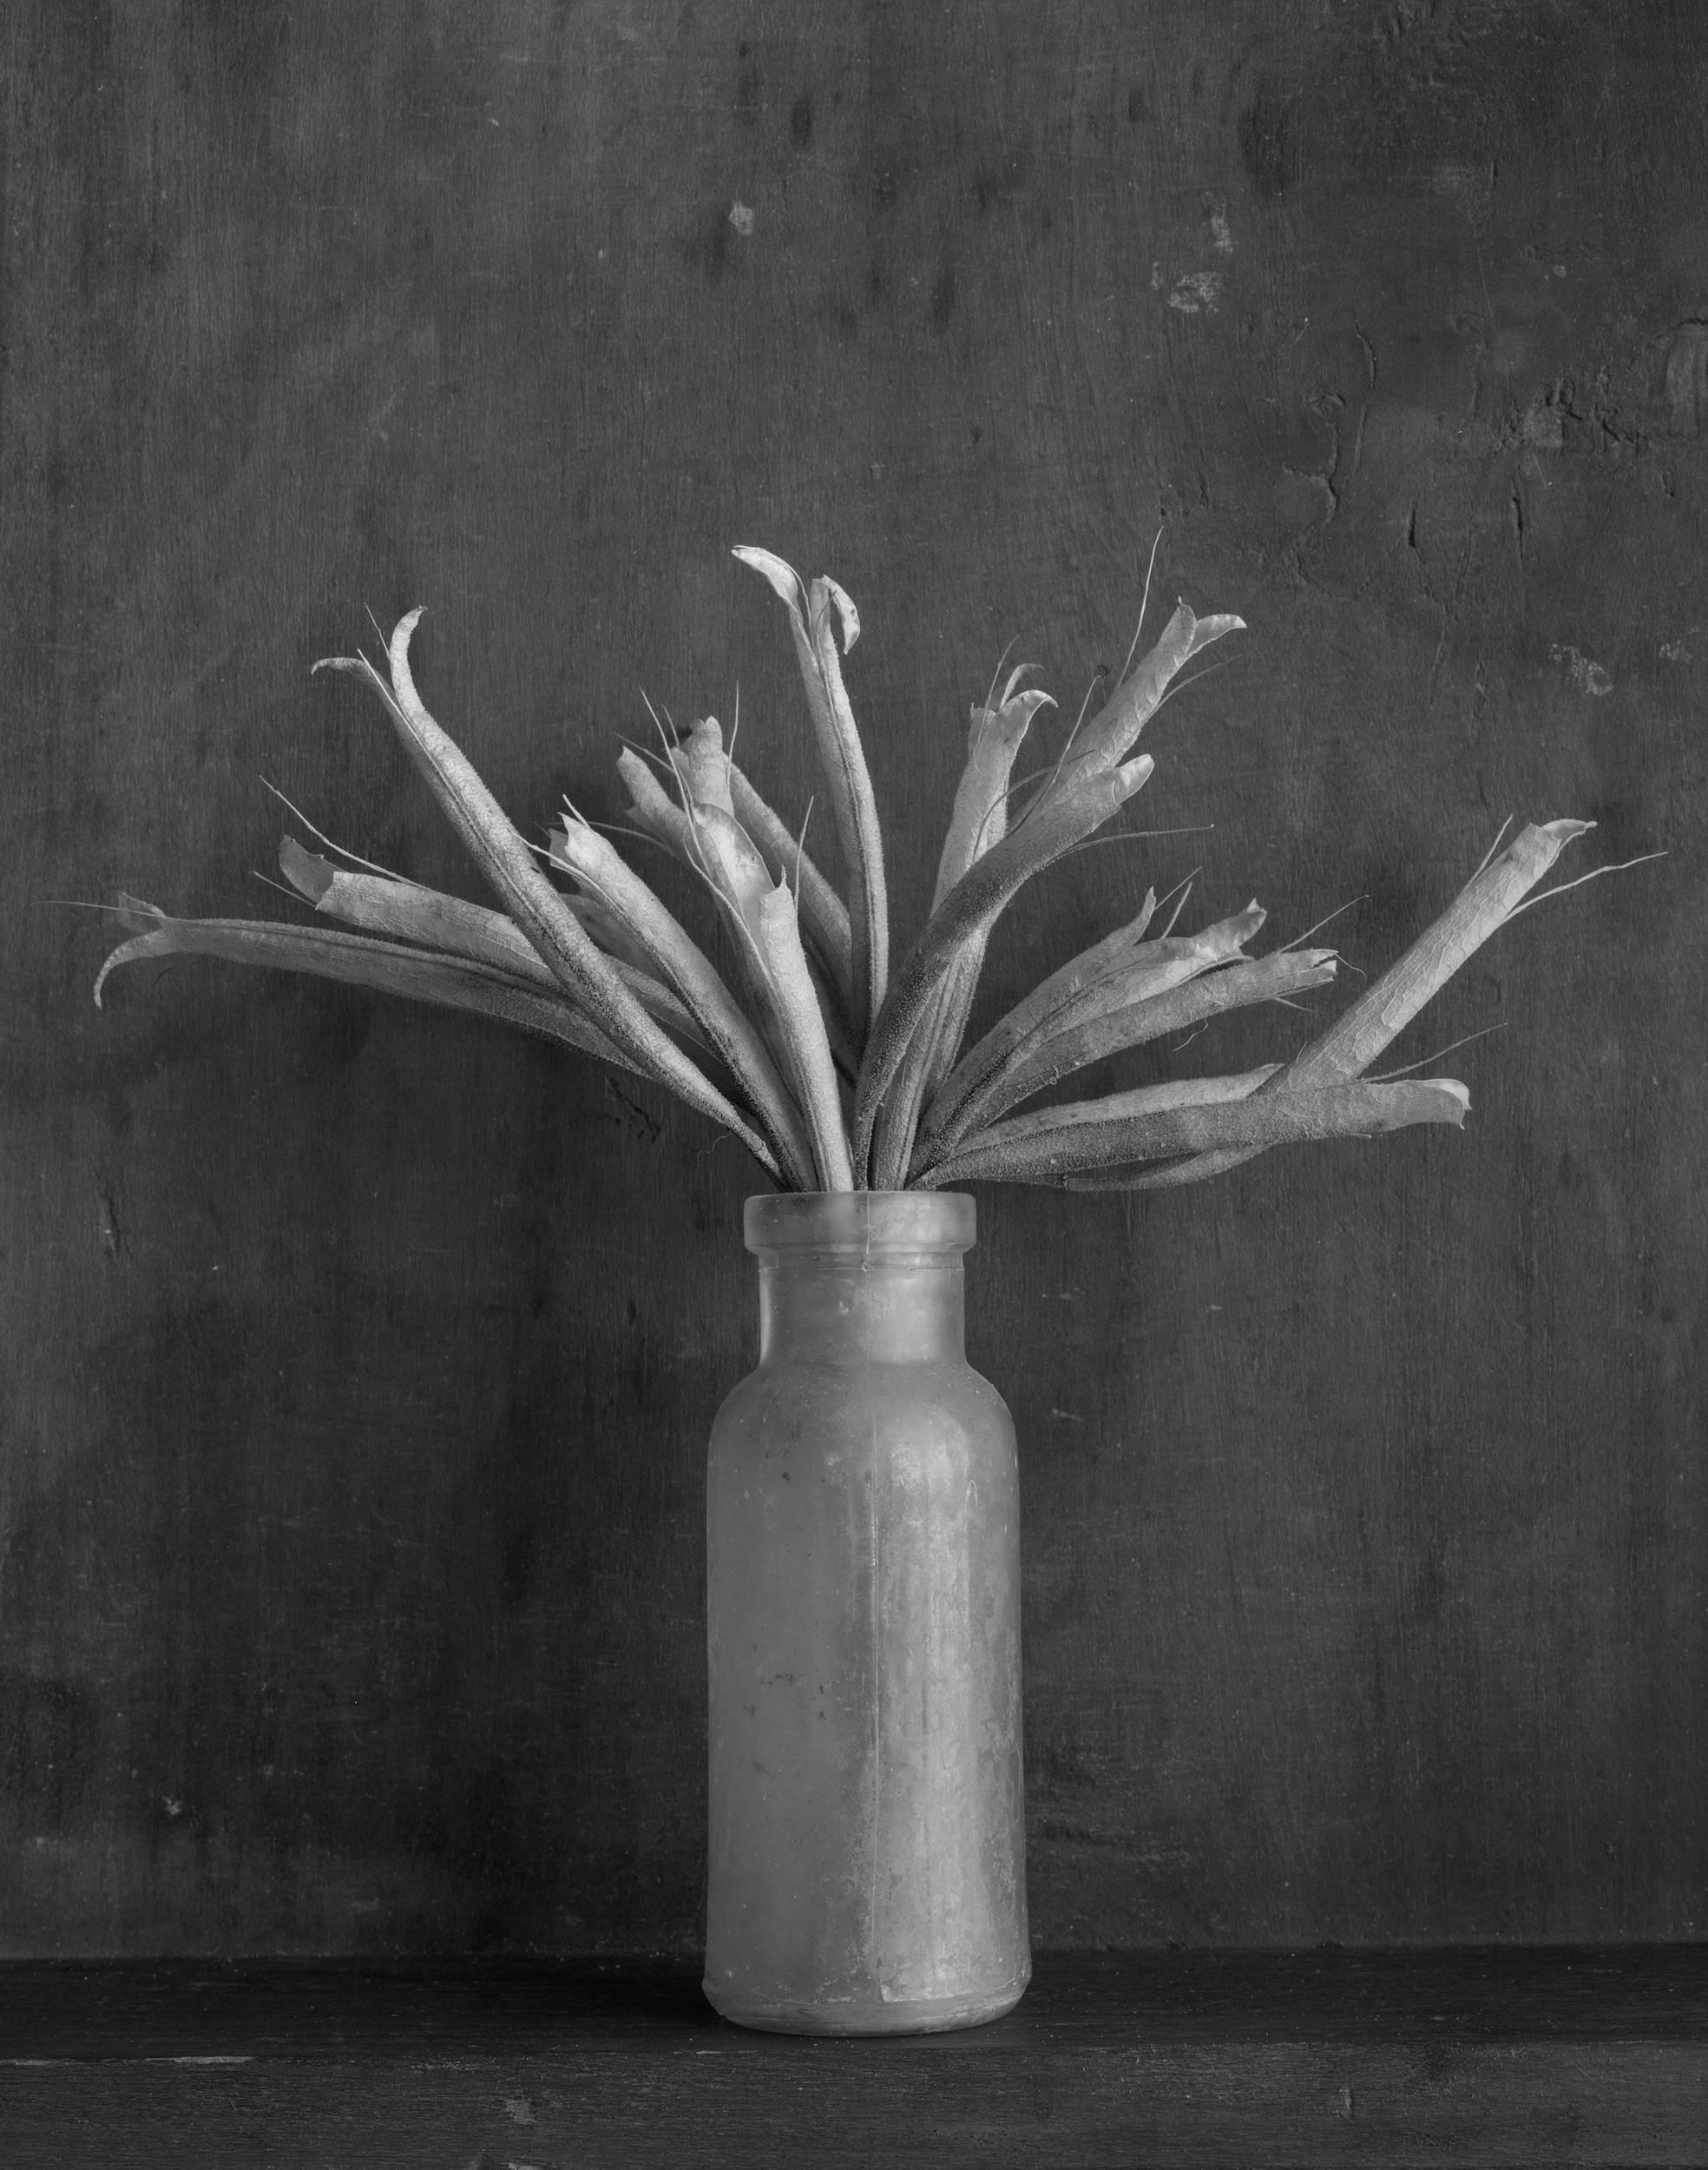 James Pitts Black and White Photograph –  Flasche mit Sharons Seeds, Schwarz-Weiß, Stilllebenfotografie, signiert, ltd